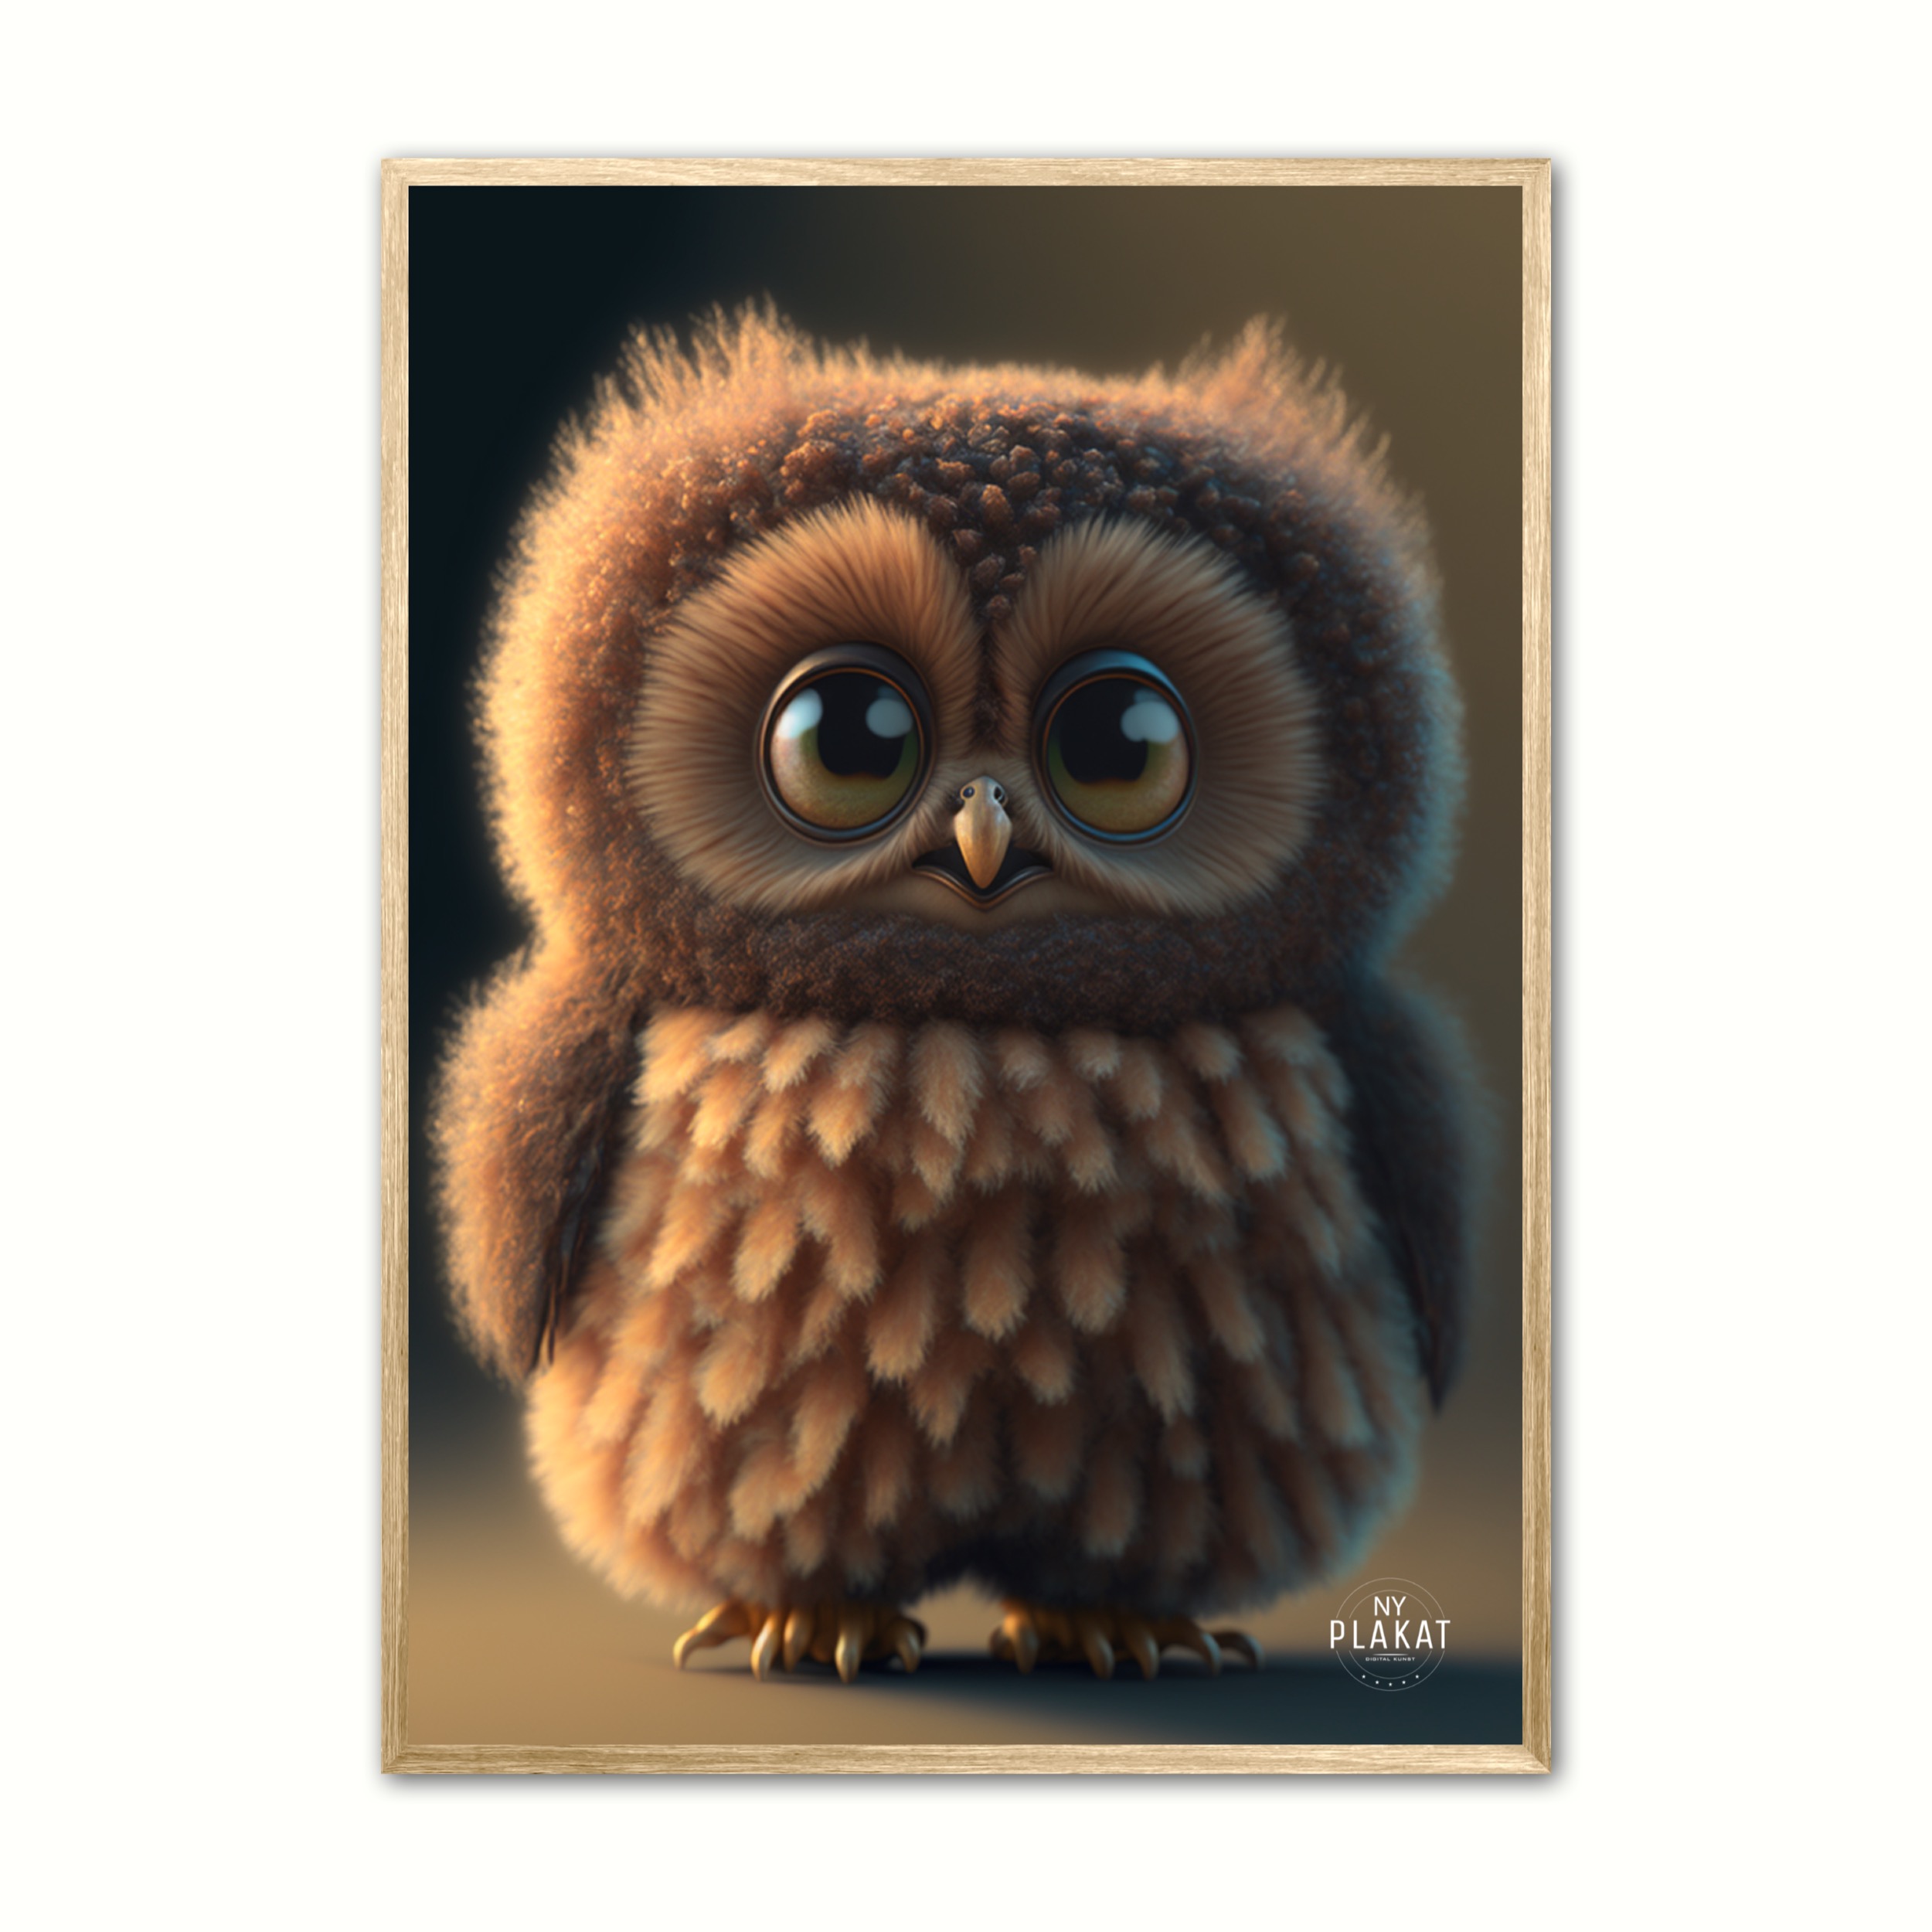 Billede af Plakat med Owlette - Ugle 21 x 29,7 cm (A4)